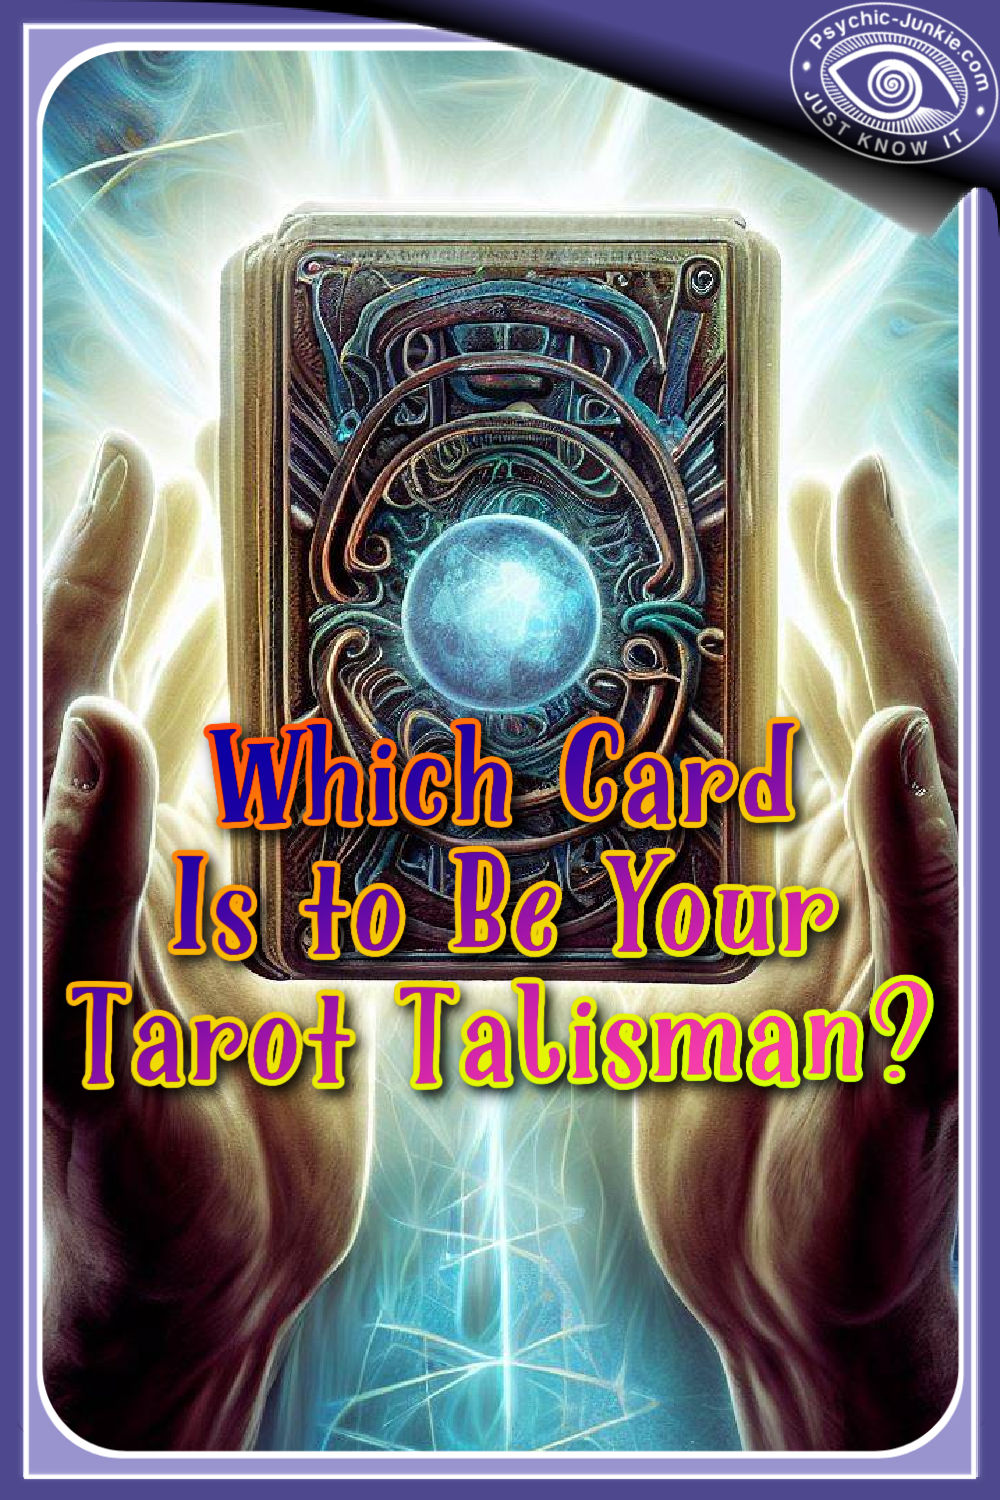 Tarot Card As A Talisman